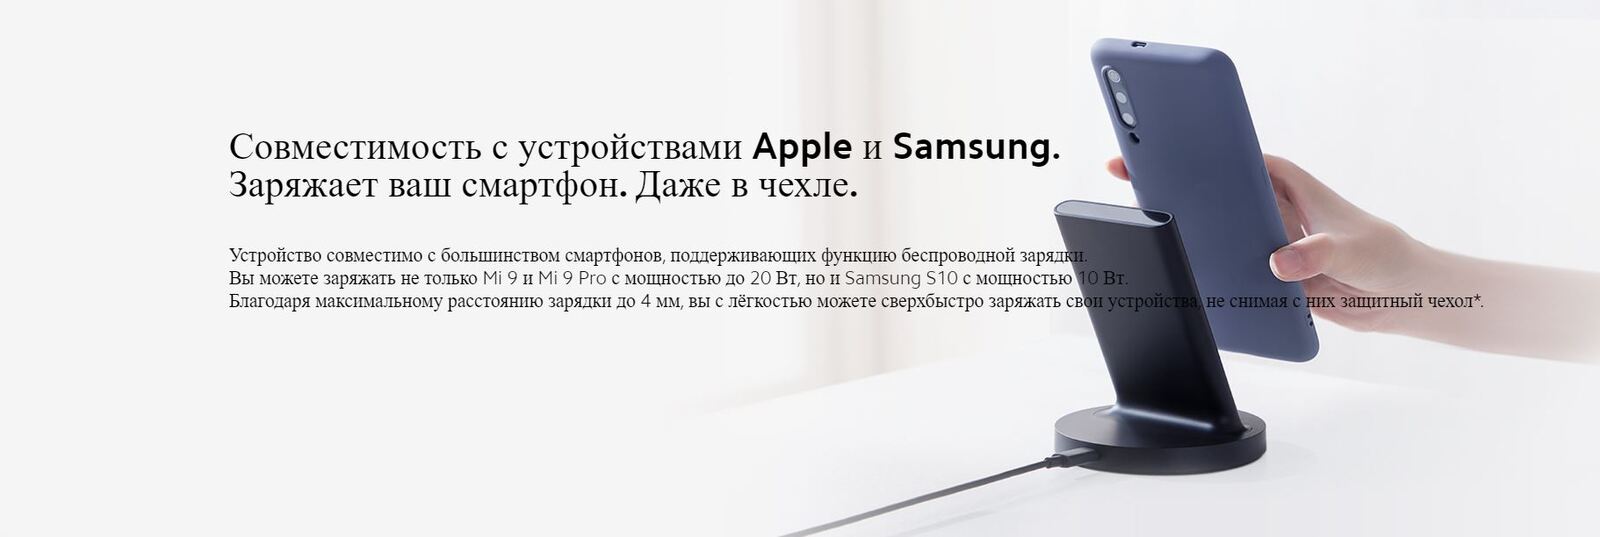 Совместимость с устройствами Apple и Sumsung. Заряжает смартфон даже в чехле.